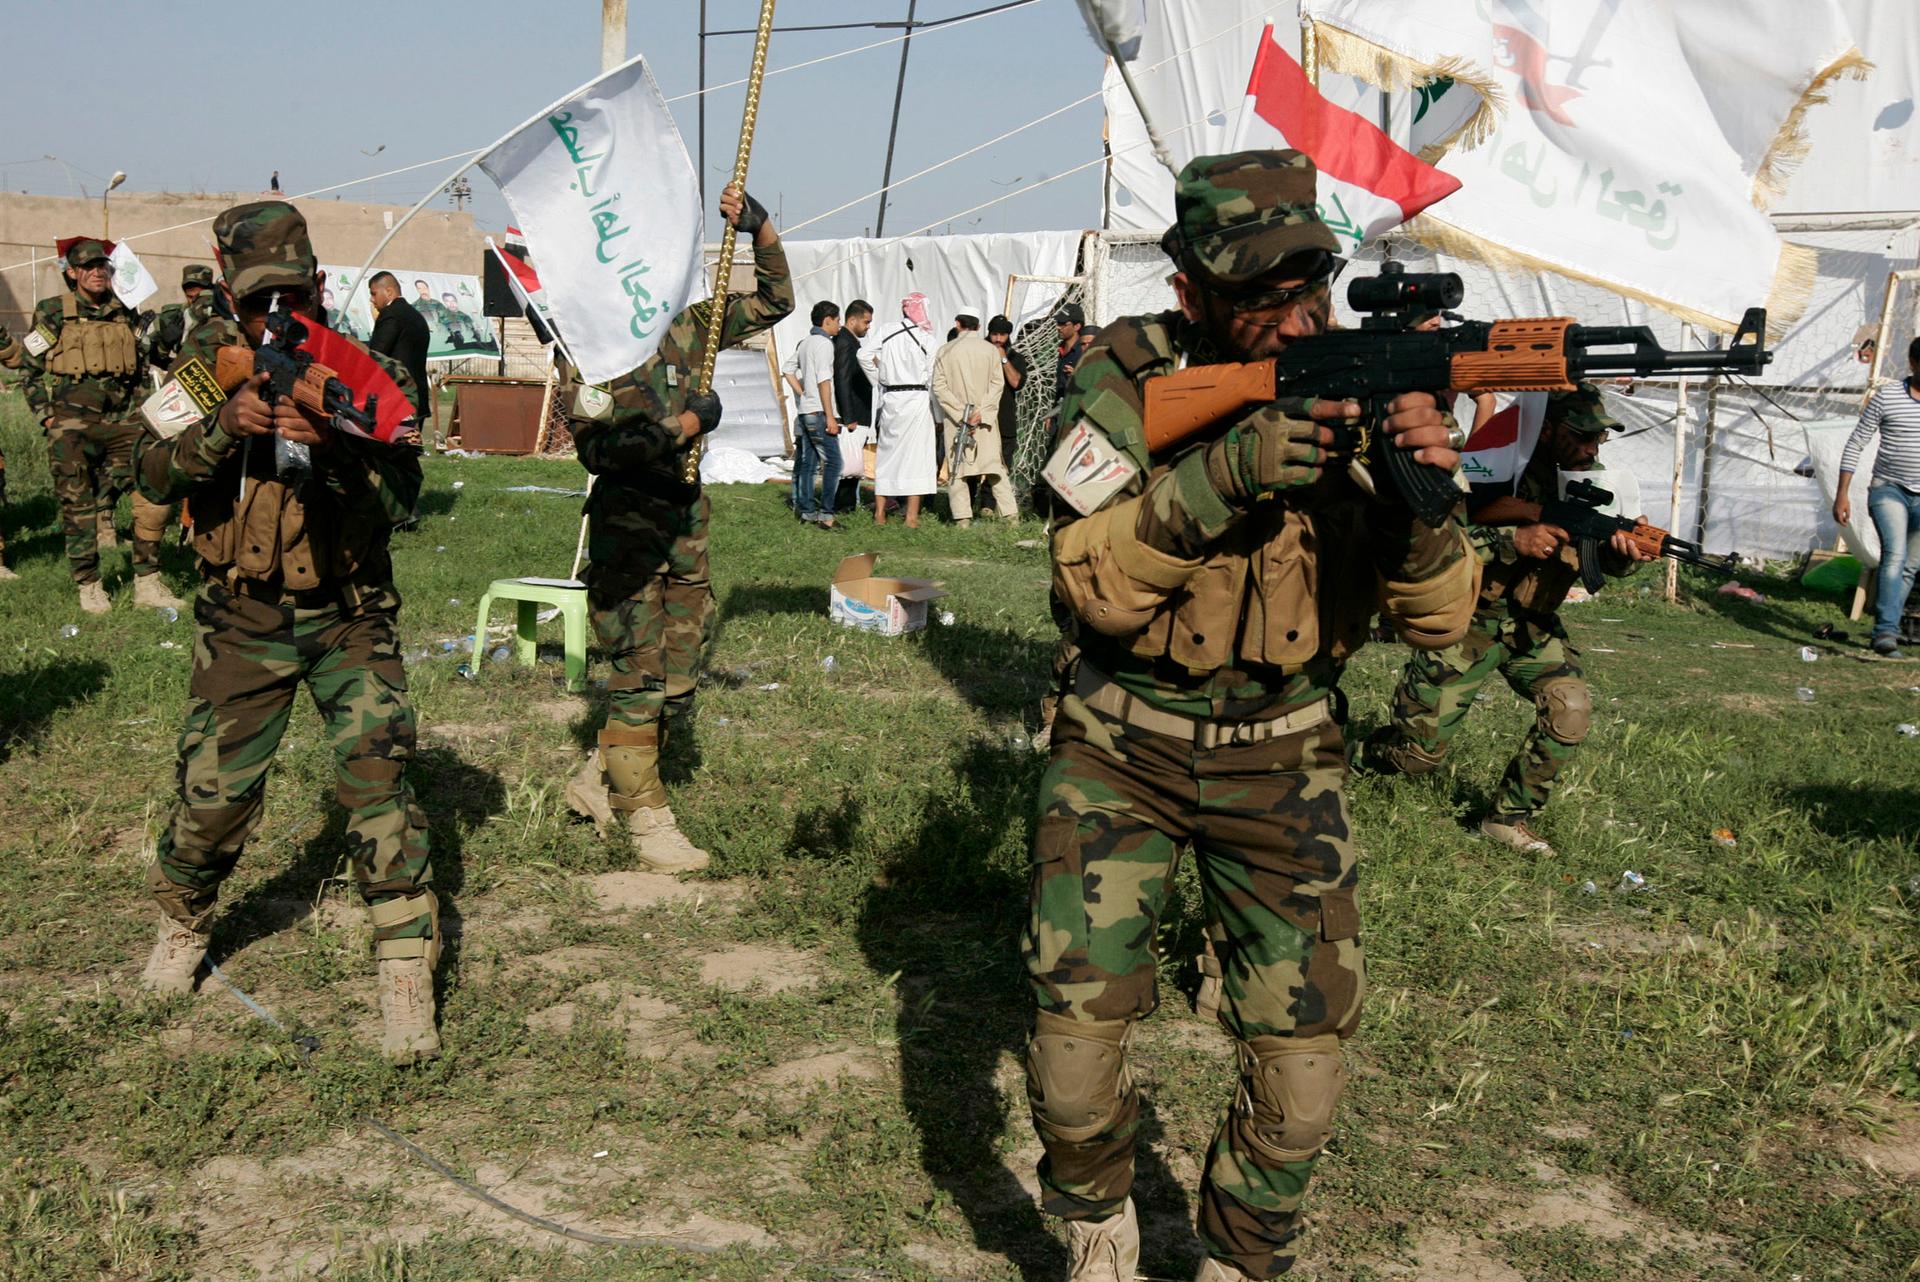 Iraq's Shi'ite militia Asaib Ahl al-Haq